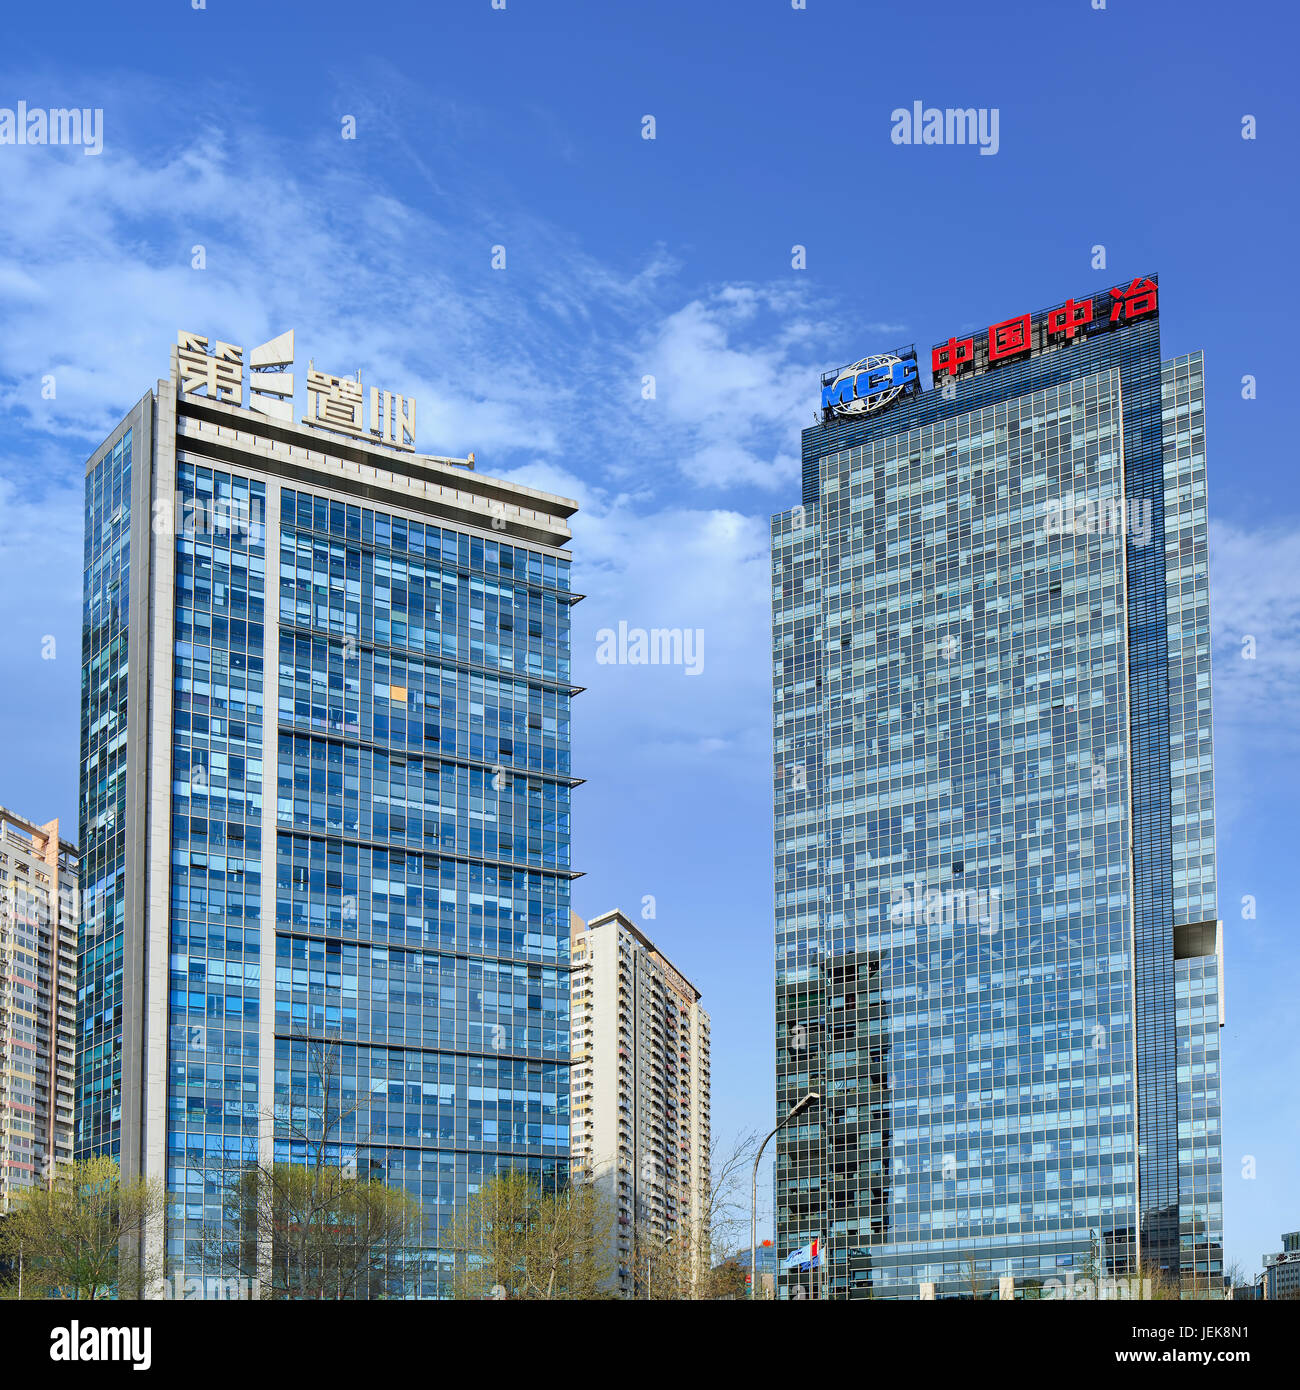 PEKING, 30. MÄRZ 2014. MCC-Hauptverwaltung. China Metallurgical Group Corporation (MCC) ist ein chinesisches Staatsunternehmen mit Sitz in Peking. Stockfoto